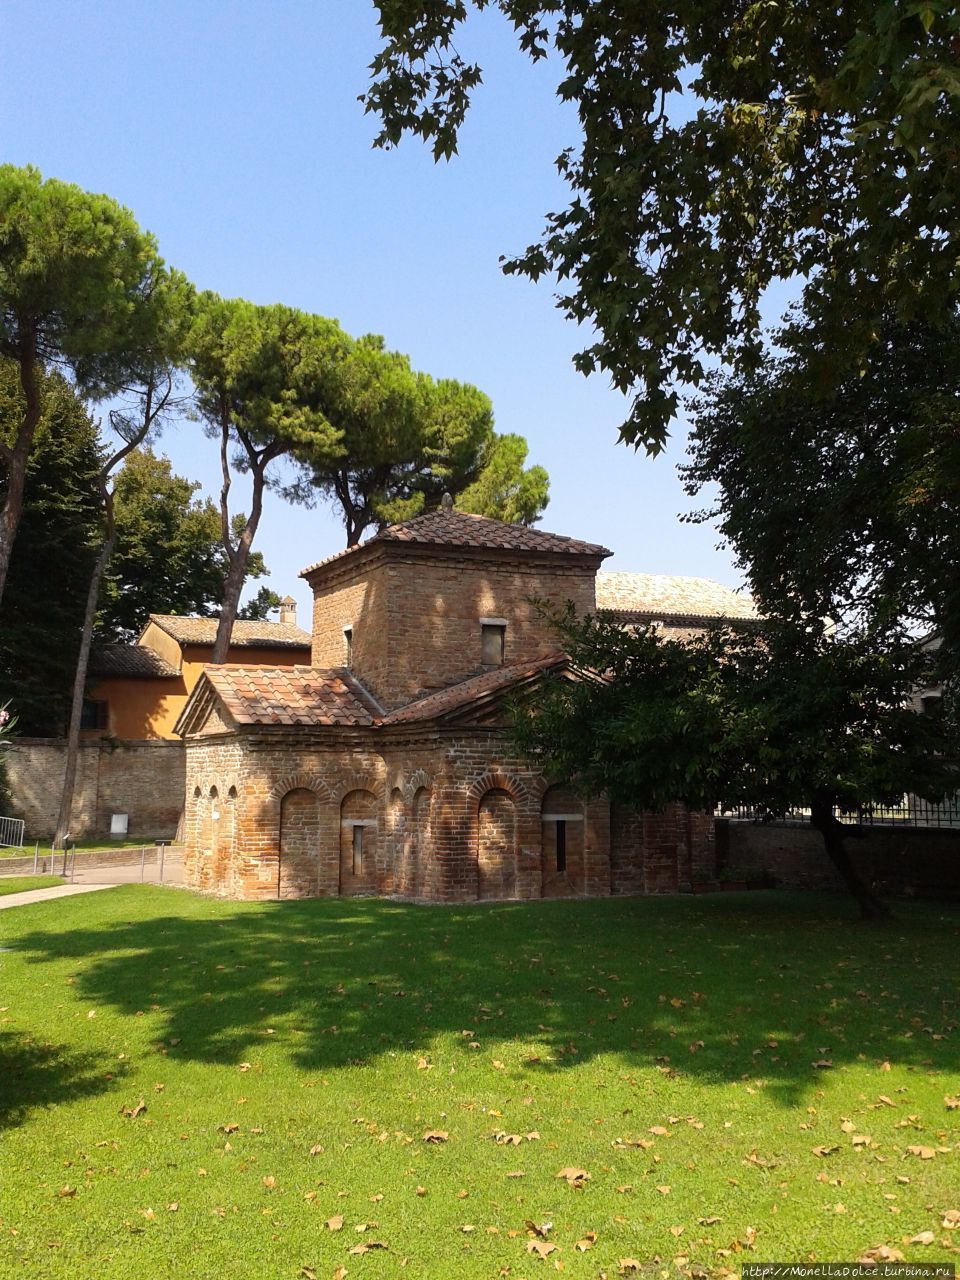 Равэнна: базилика Сан Виталэ и мавзолей Галла Плачидиа Равенна, Италия